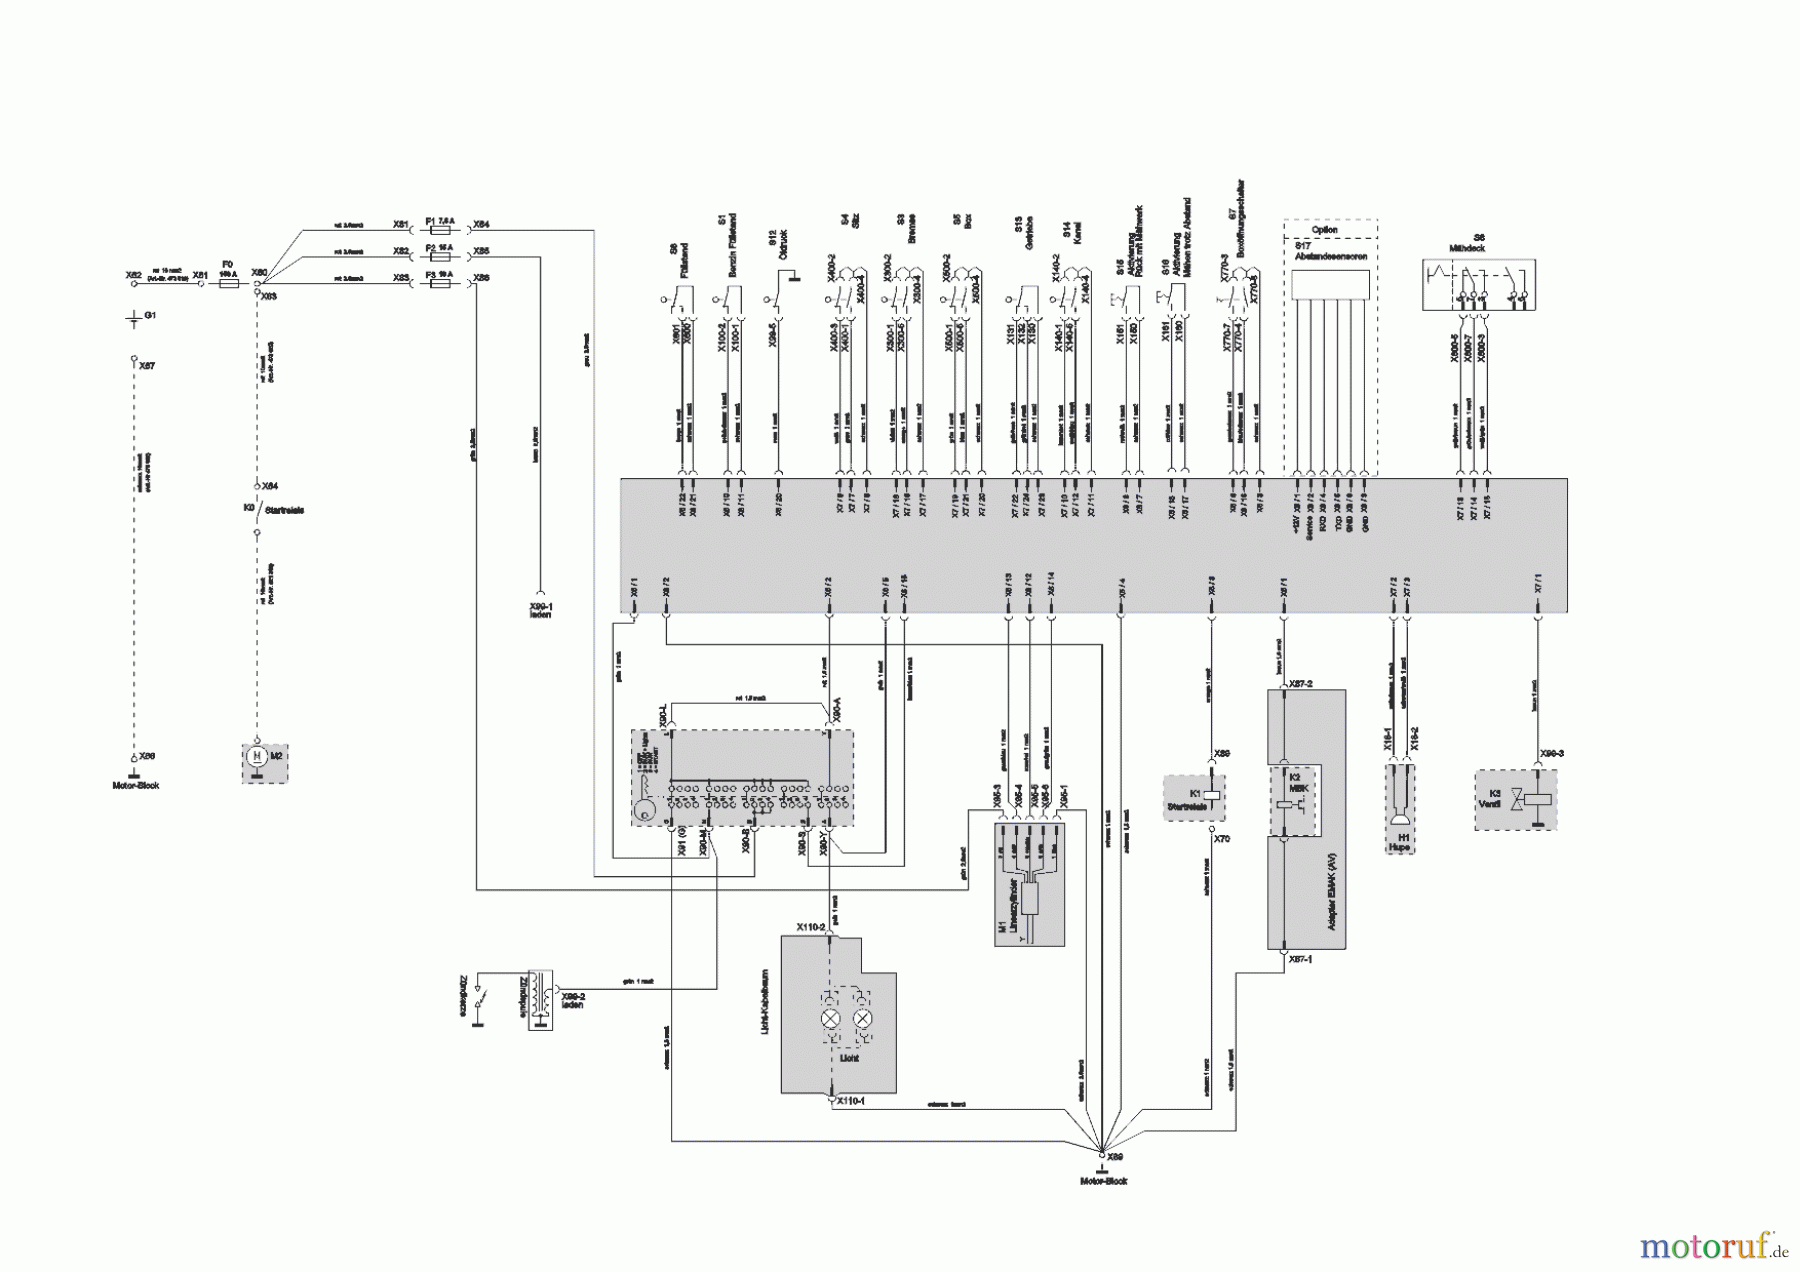  Powerline Gartentechnik Rasentraktor  T23-125.4 HD V2  ab 09/2016 Seite 11